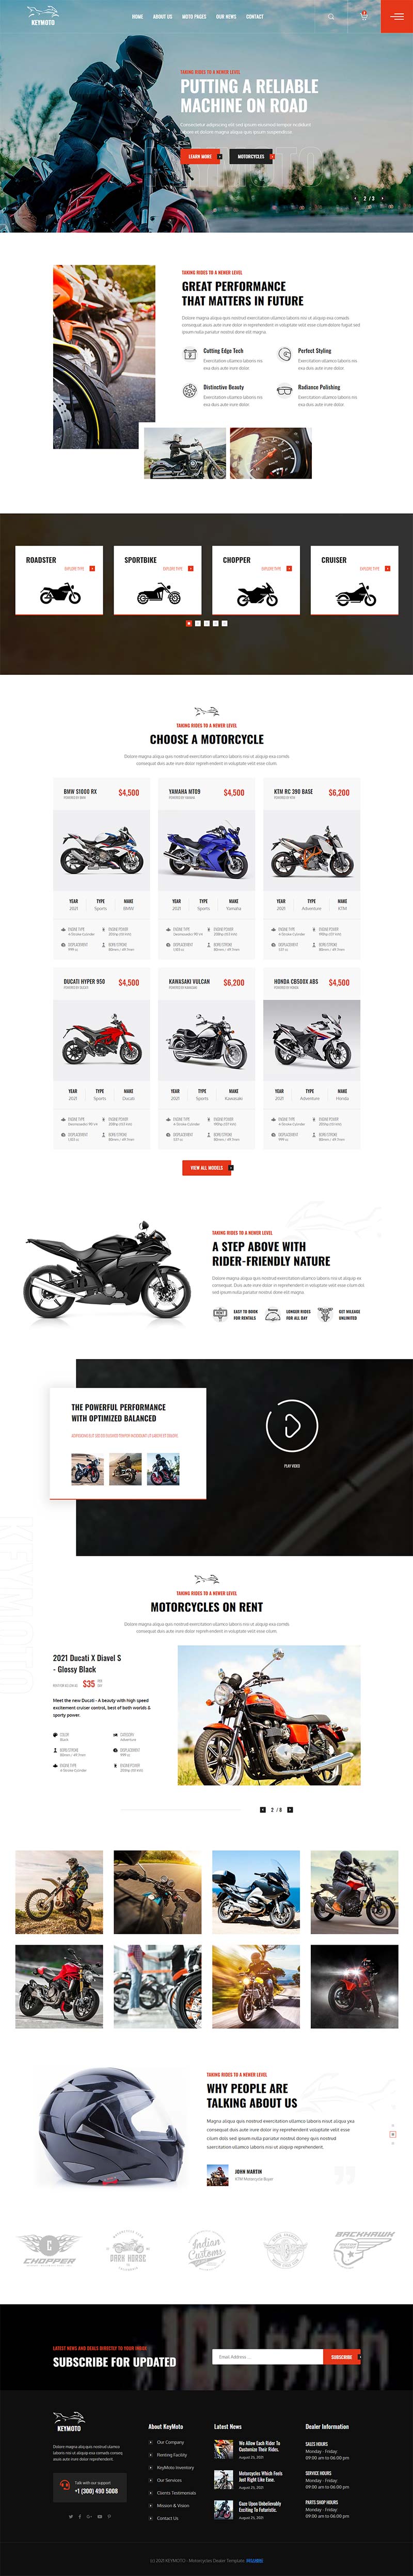 高端品牌摩托车销售公司网站HTML5模板-推推论坛